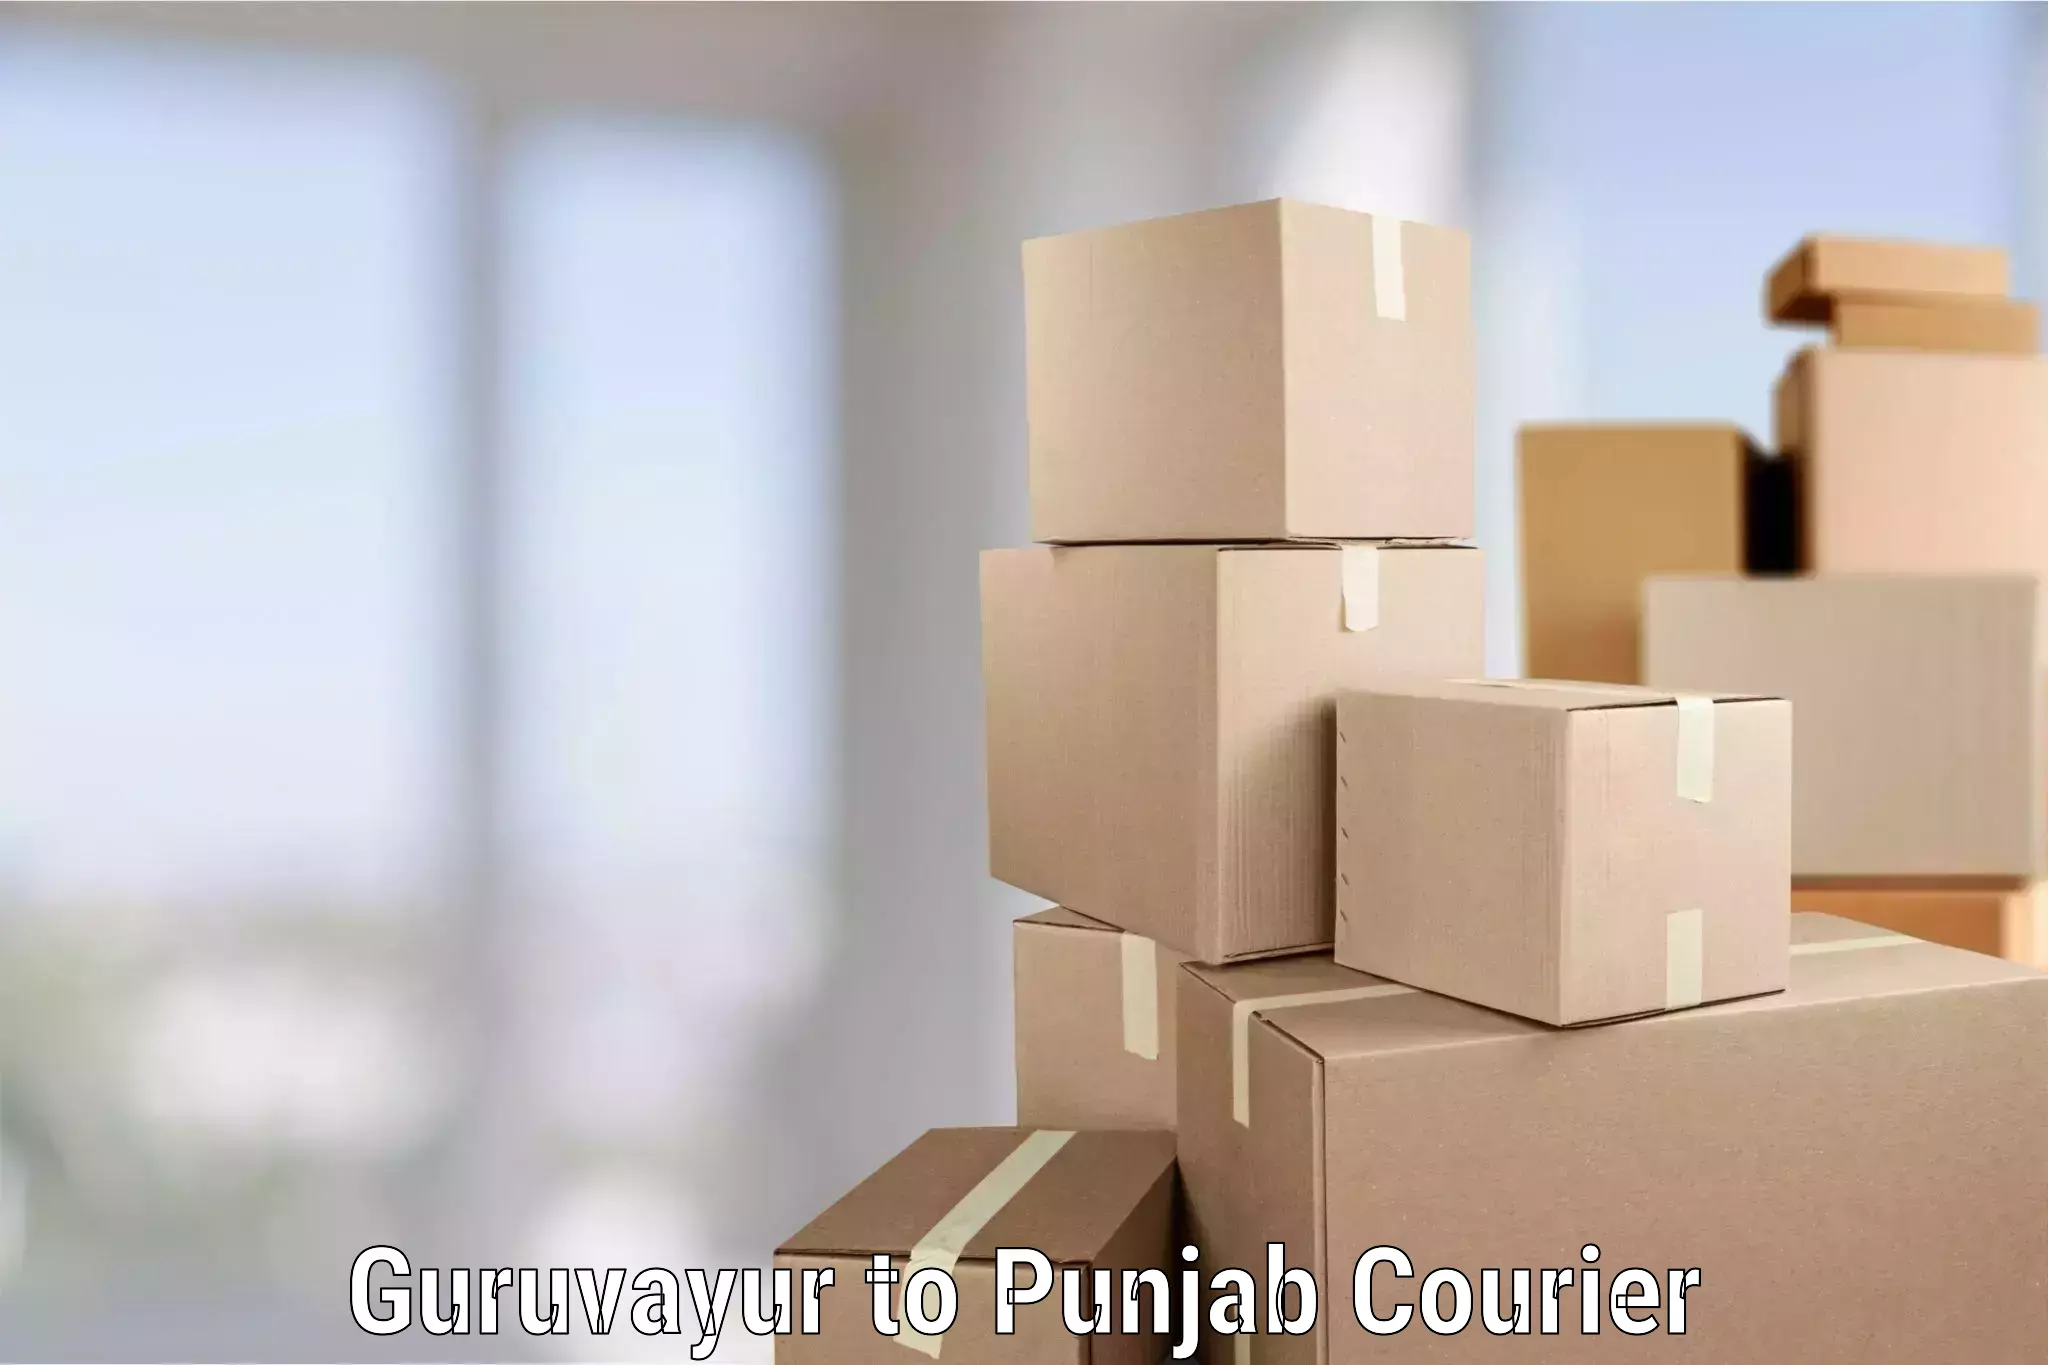 Furniture relocation experts Guruvayur to Zirakpur